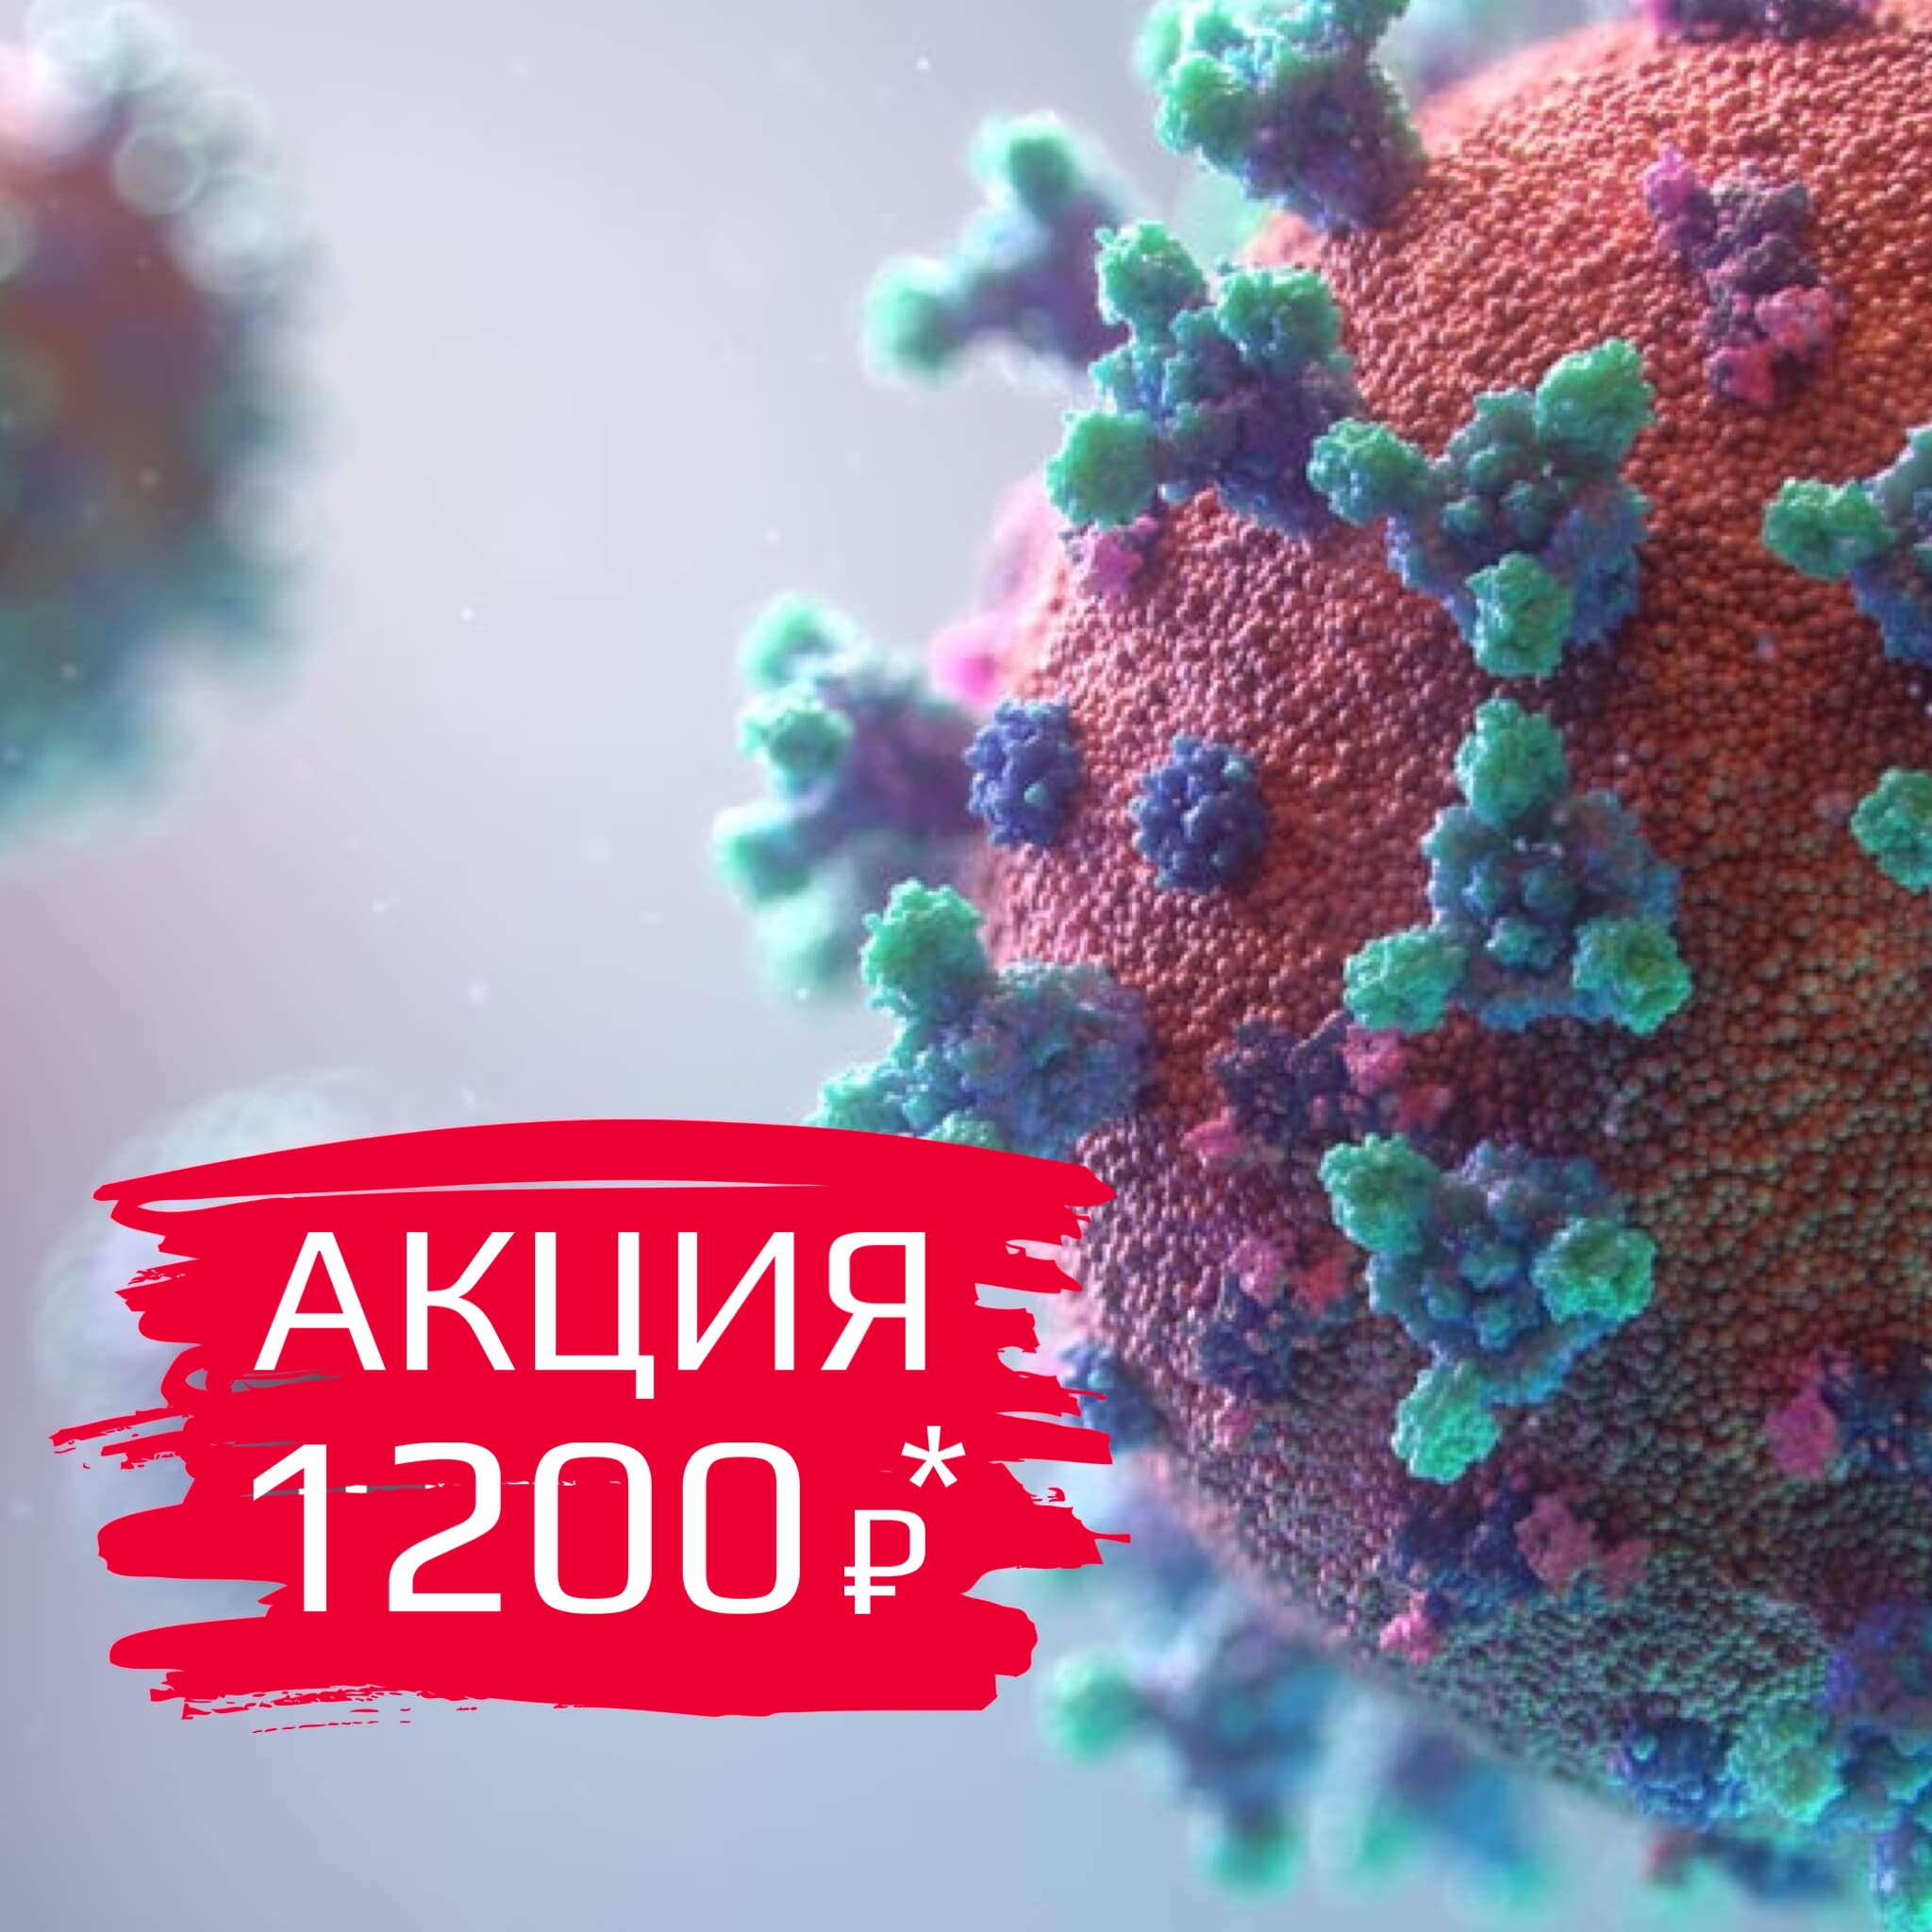 Коронавирус (SARS-CoV-2) ПЦР мазок за 1 день + результат на русском и английском языках**